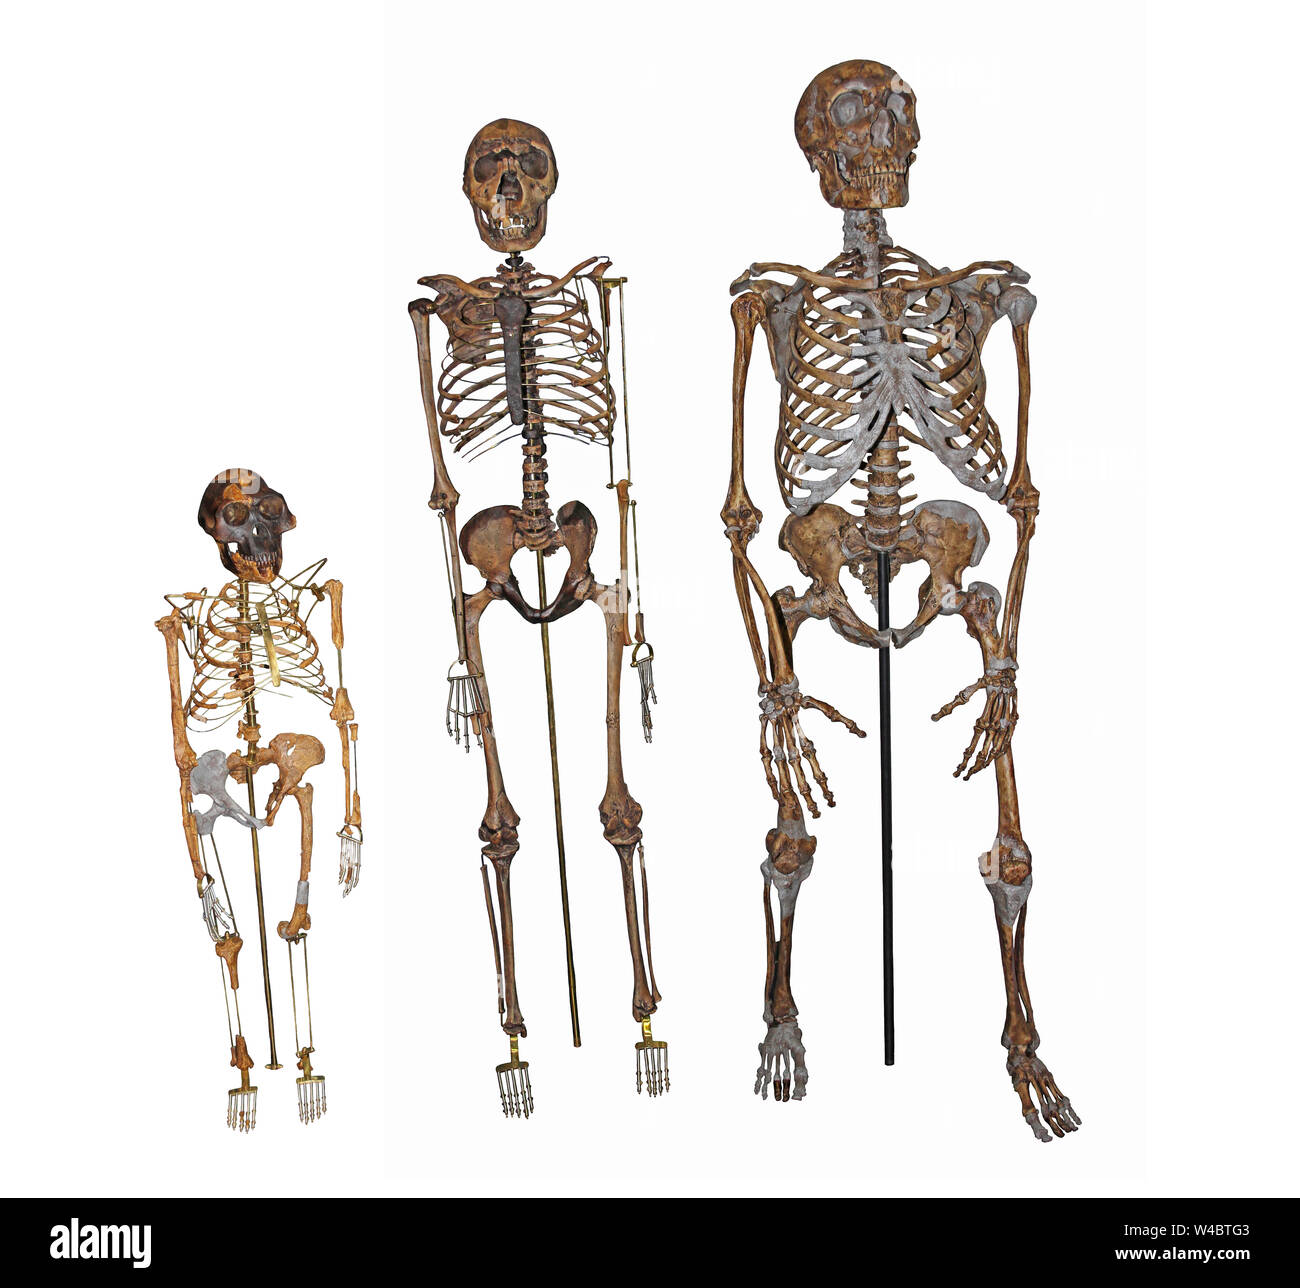 La evolución humana - Comparación de los esqueletos de 'Lucy Australopithecus afarensis, 'Boy' Nariokotome Homo ergaster y el hombre de Neandertal Foto de stock